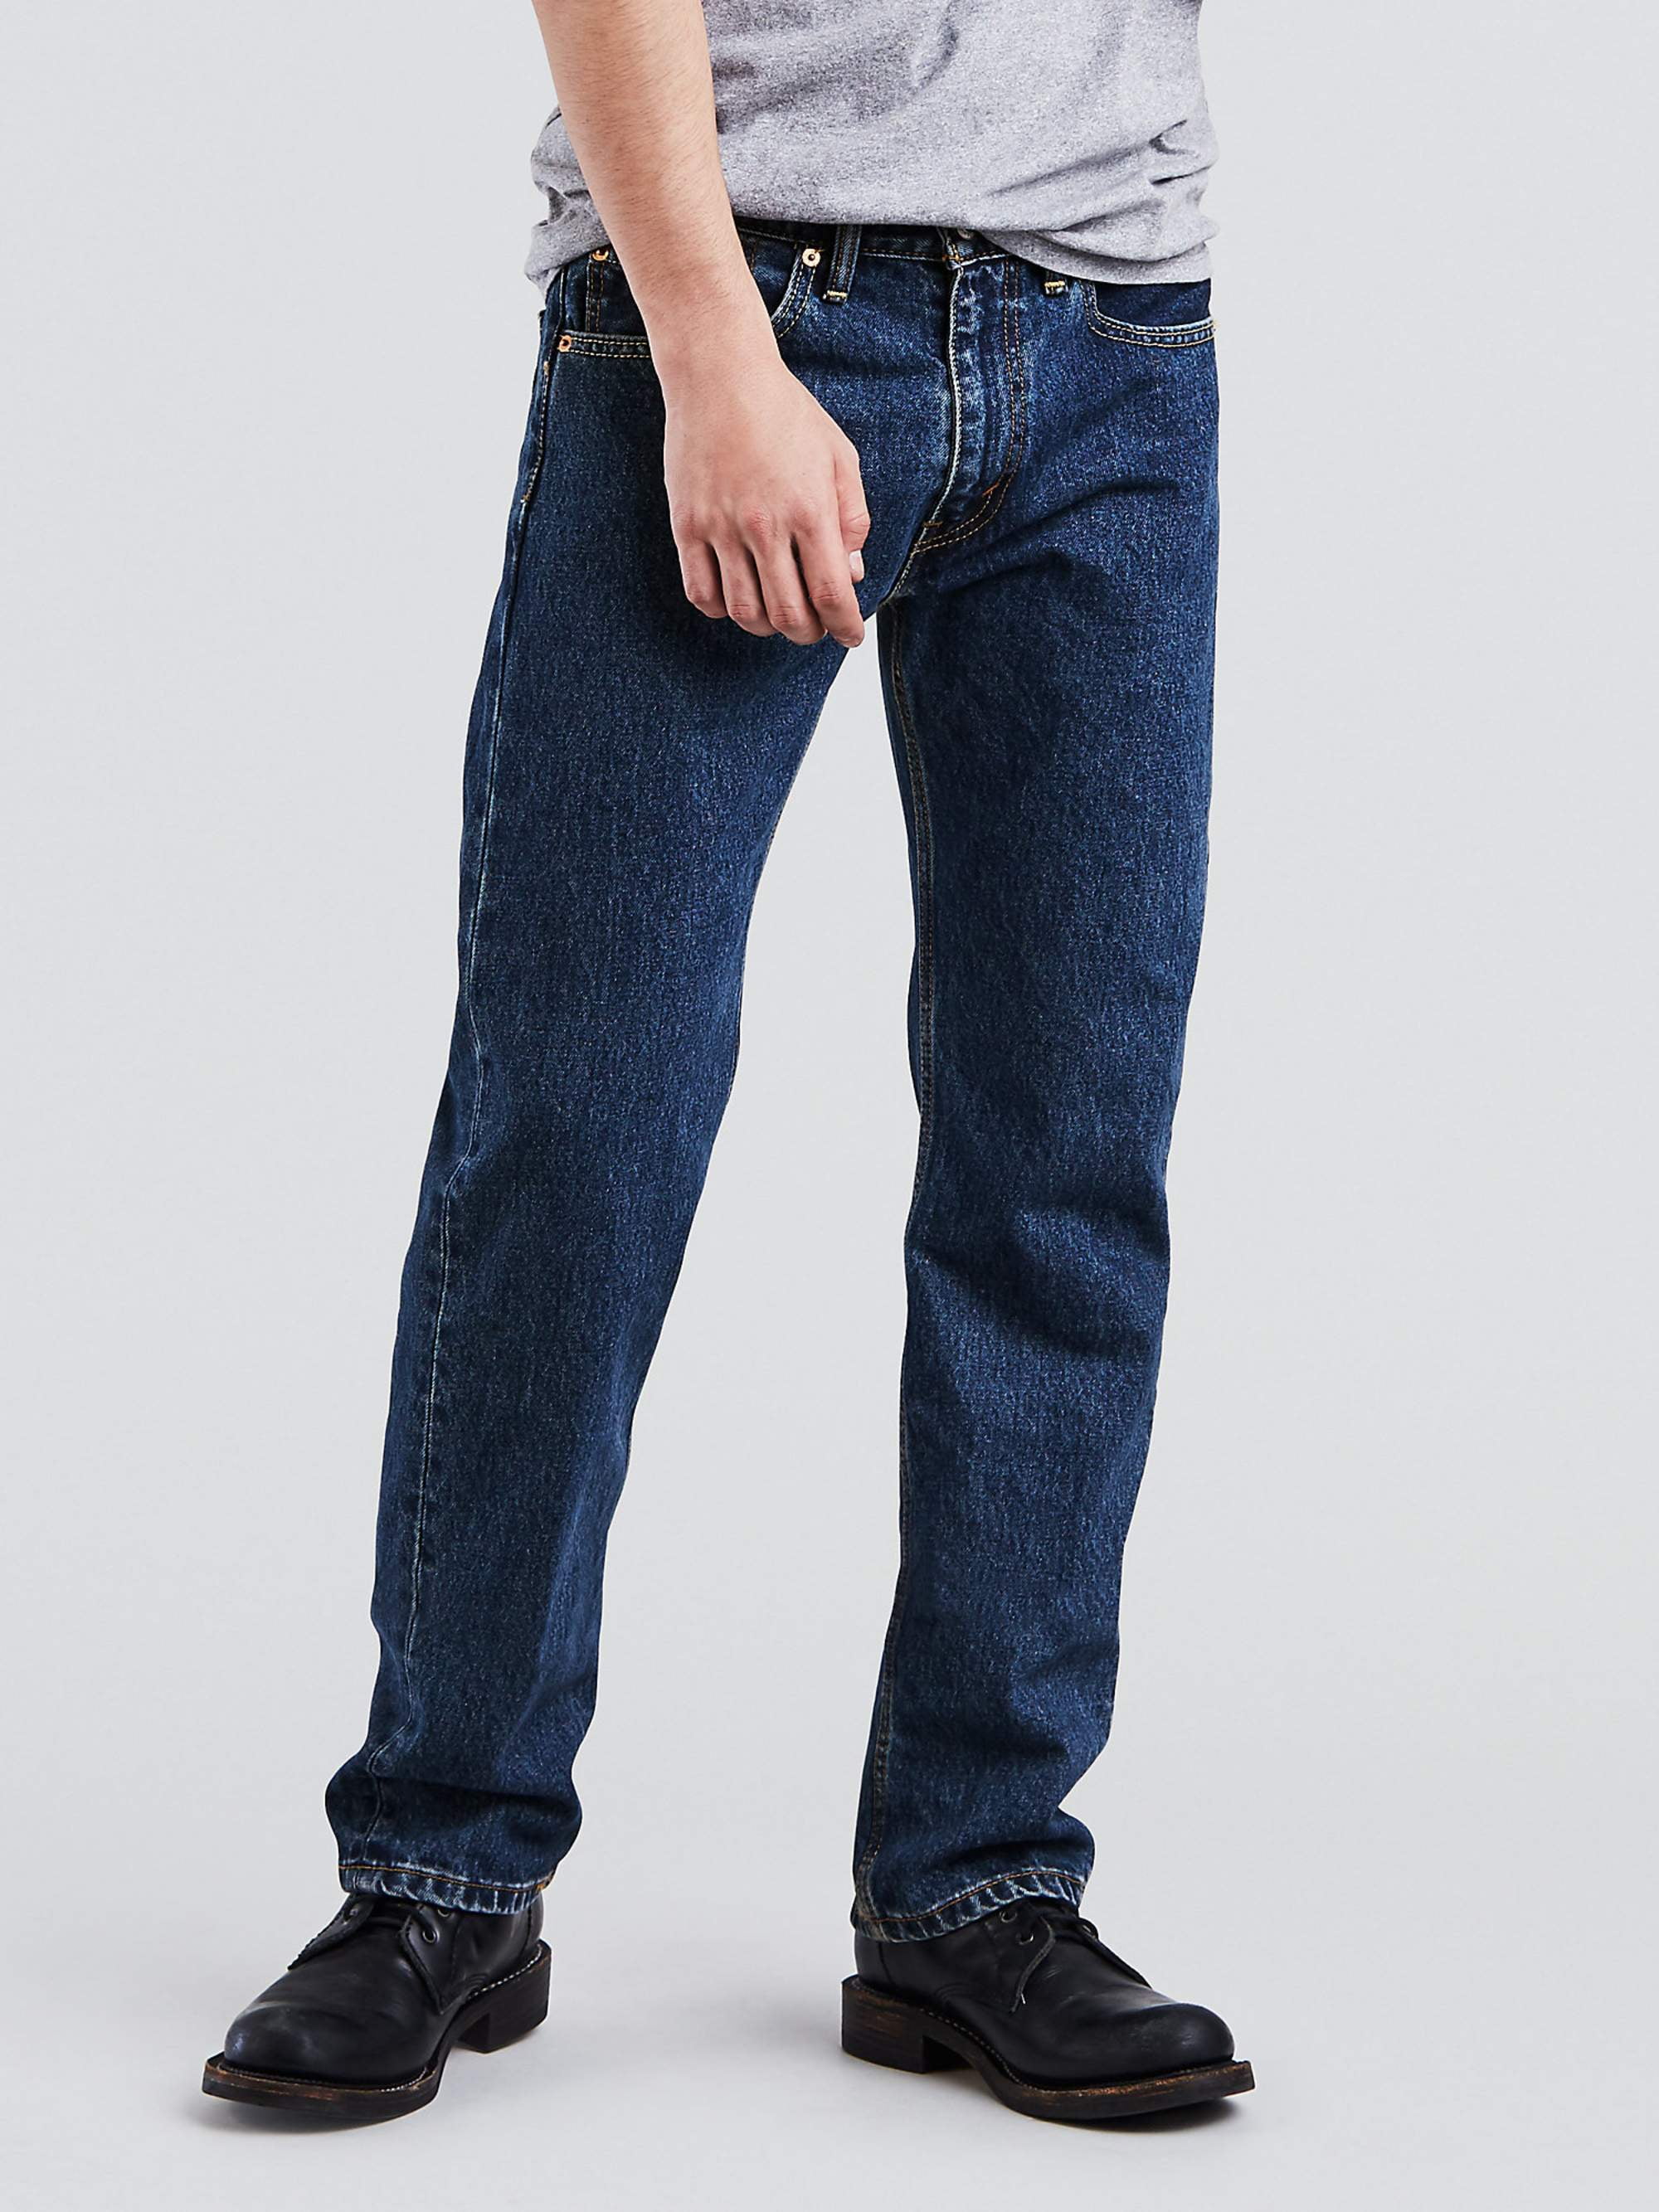 levi's 505 blue jeans